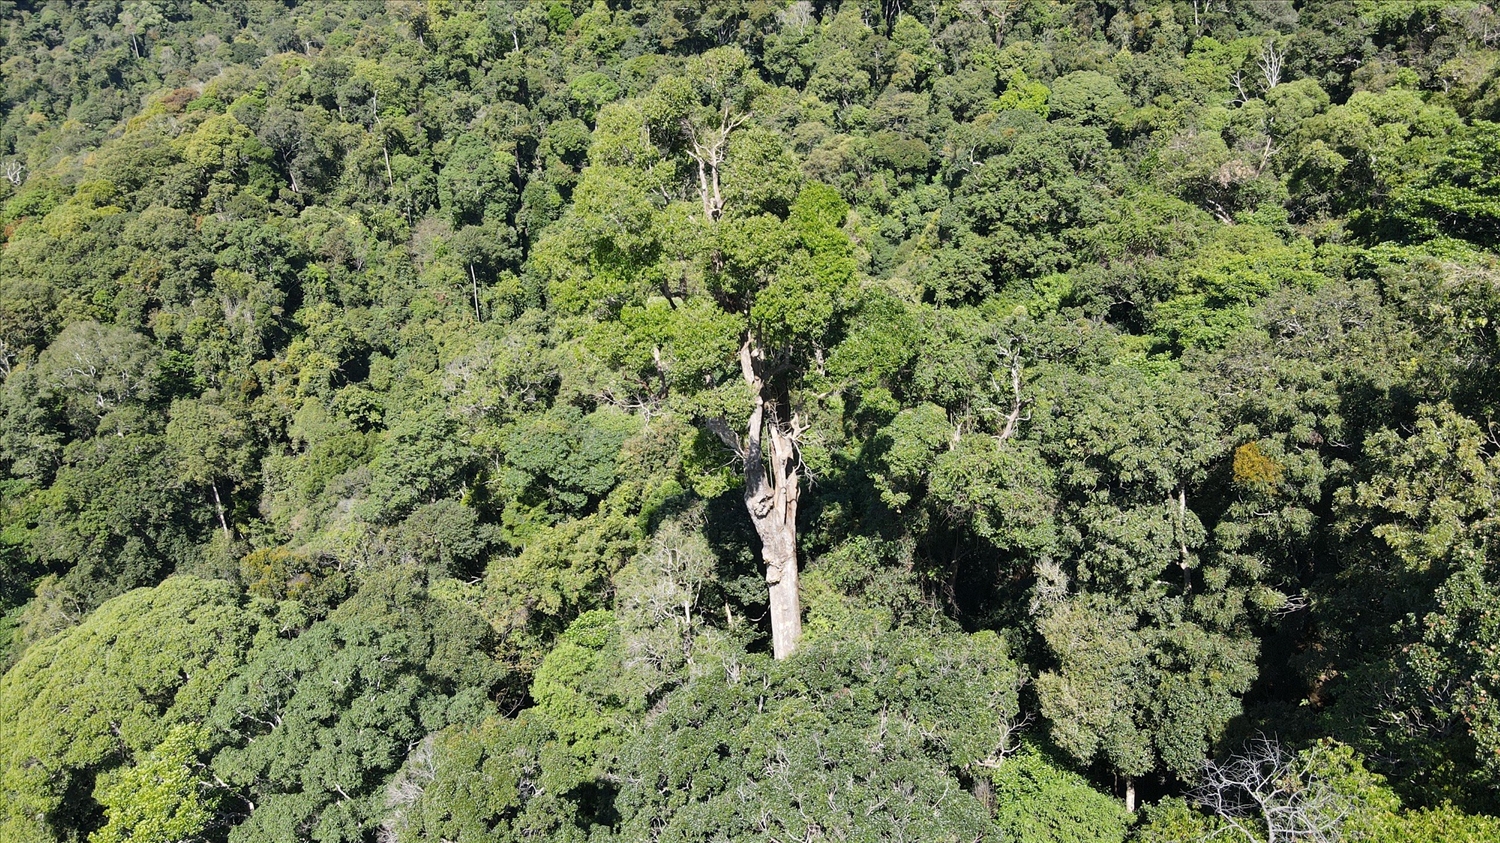 Tỉnh Kon Tum hiện có 632.938 ha rừng nhưng chỉ có hơn 1.000 cán bộ, viên chức, người lao động làm công tác quản lý, bảo vệ rừng